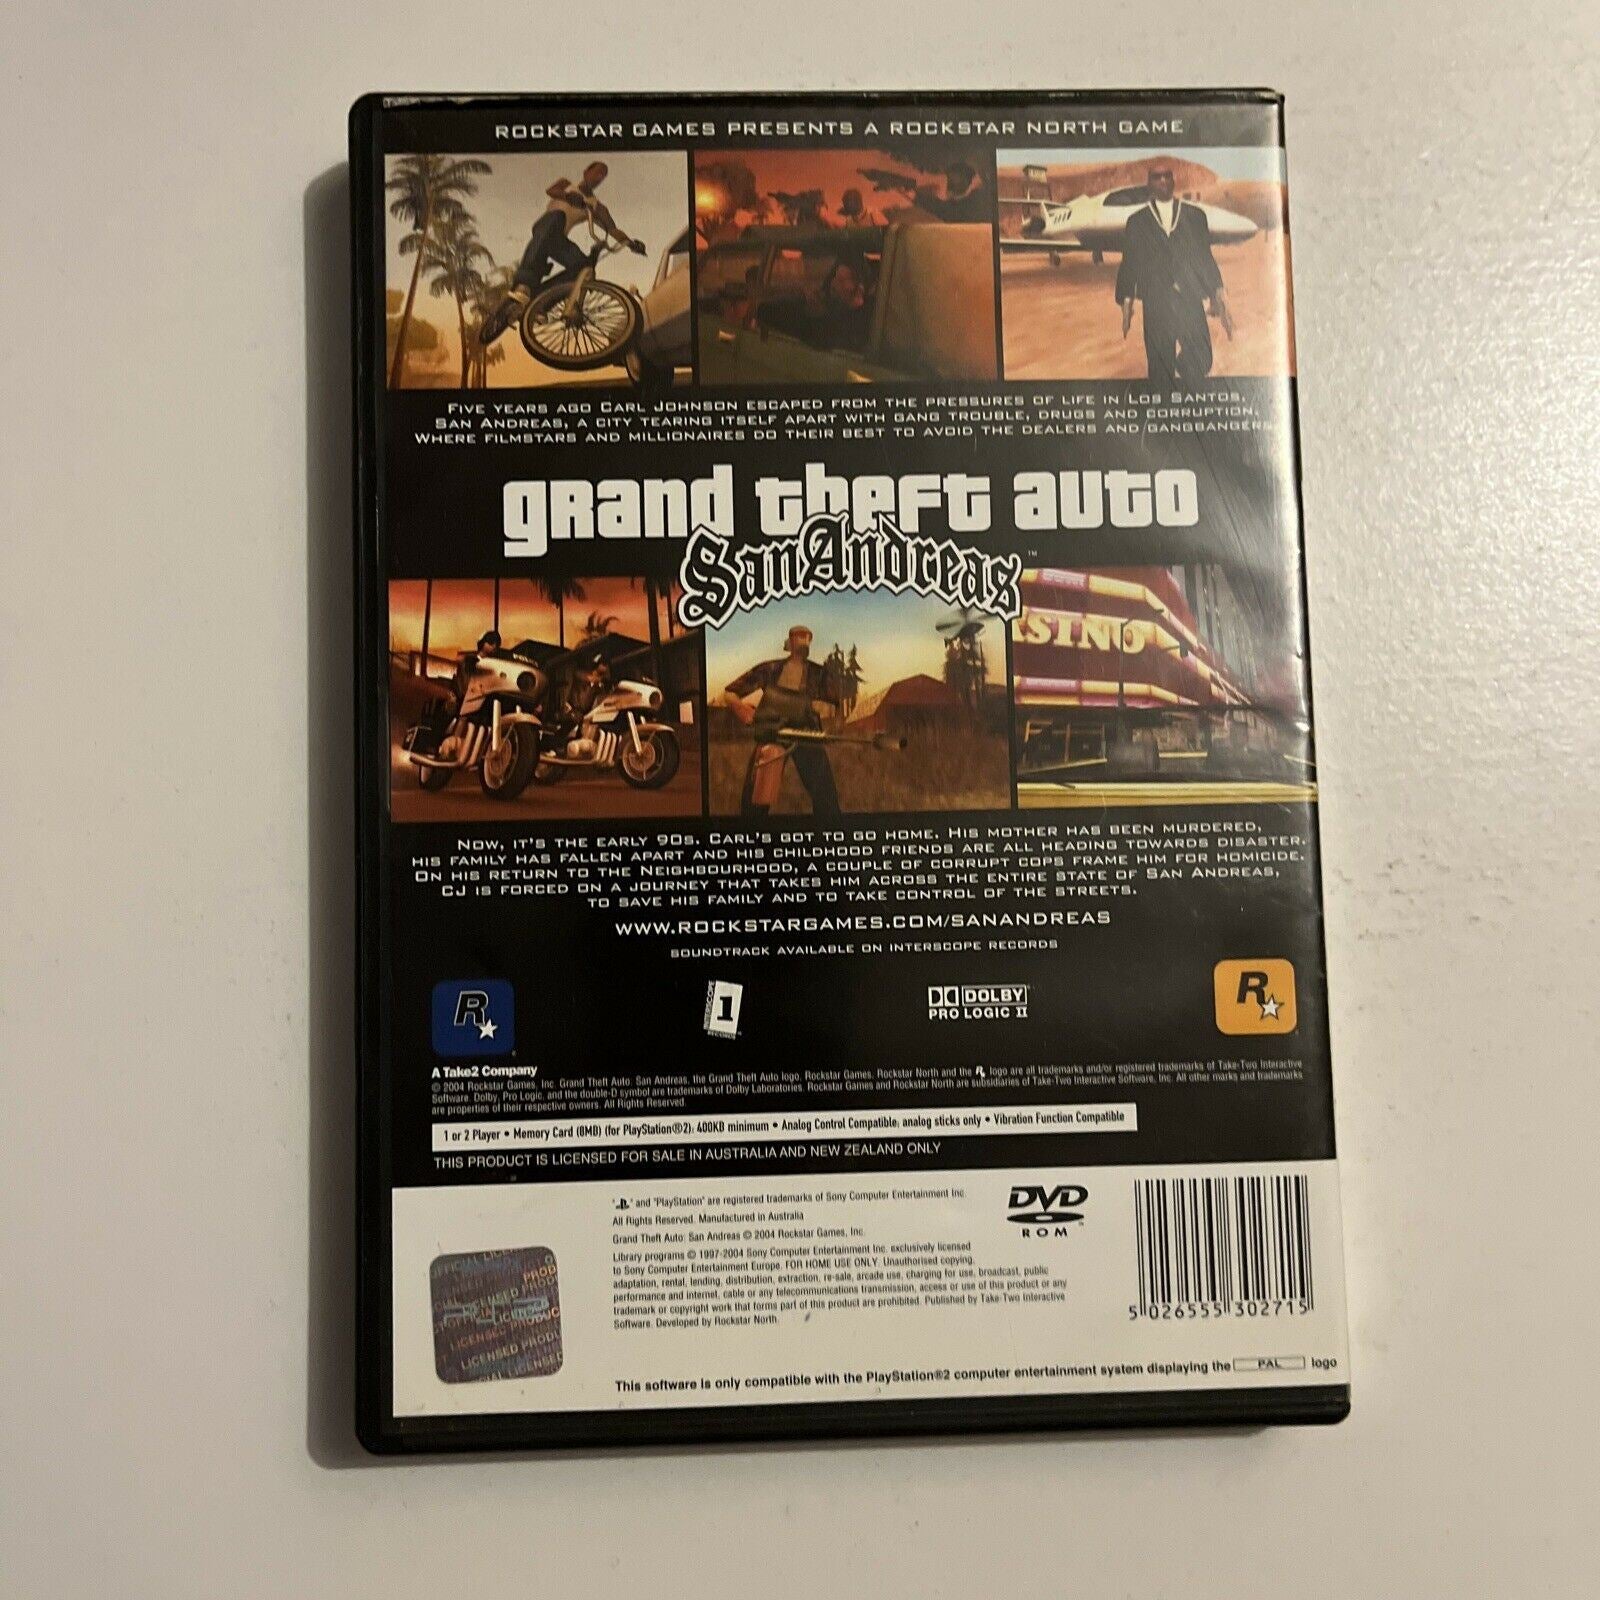 Grand Theft Auto San Andreas PS2 Platinum no manual